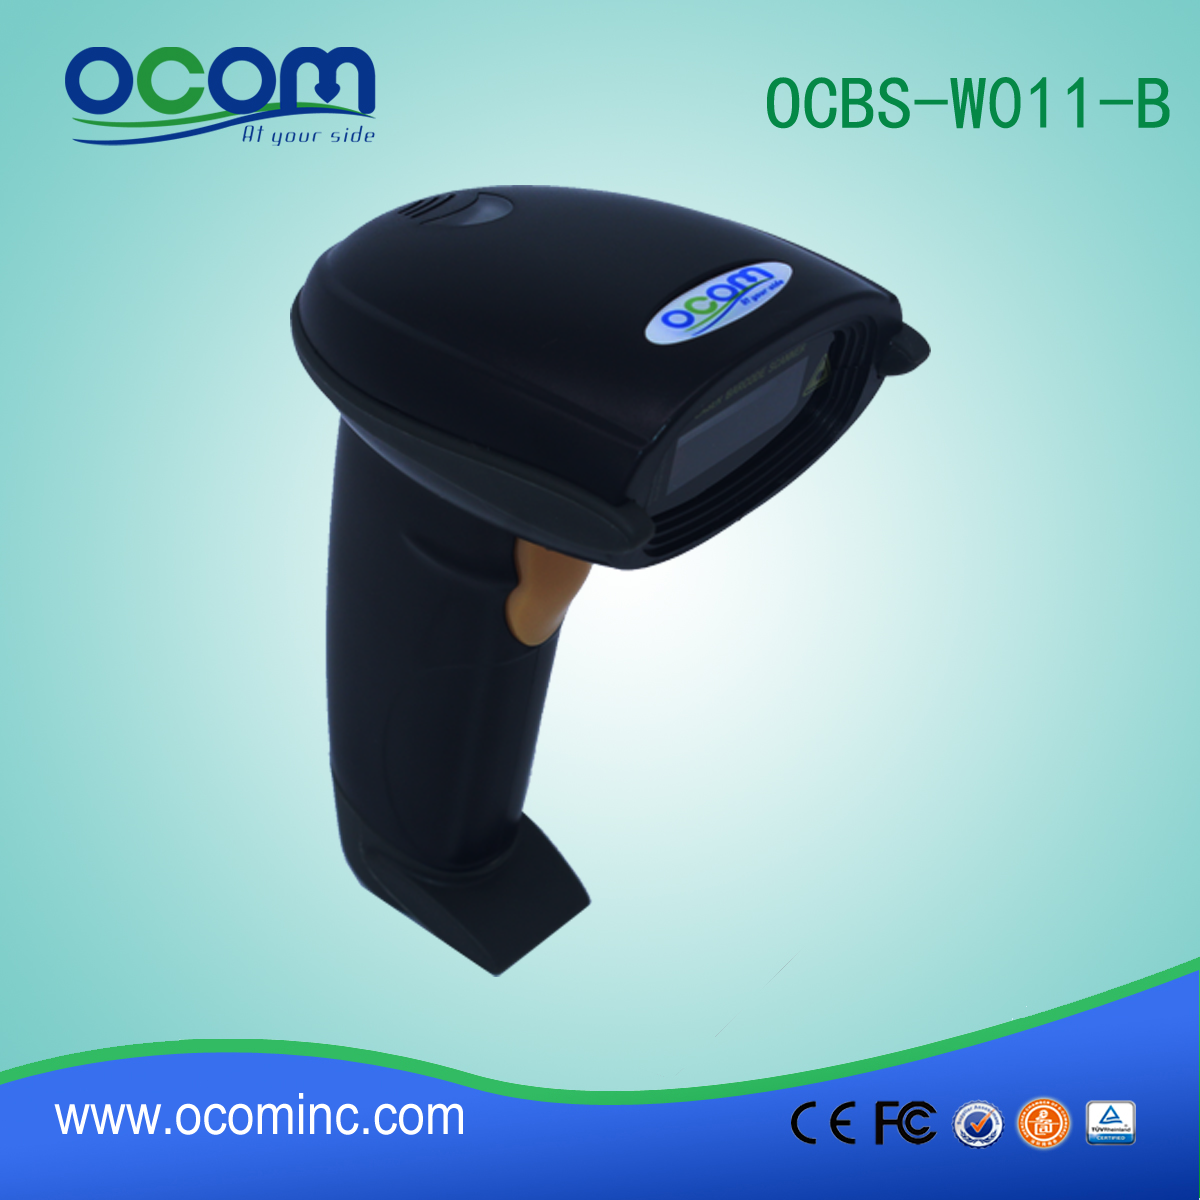 billige Handheld tragbaren drahtlosen Barcode-Scanner Bluetooth (OCBS-W011)